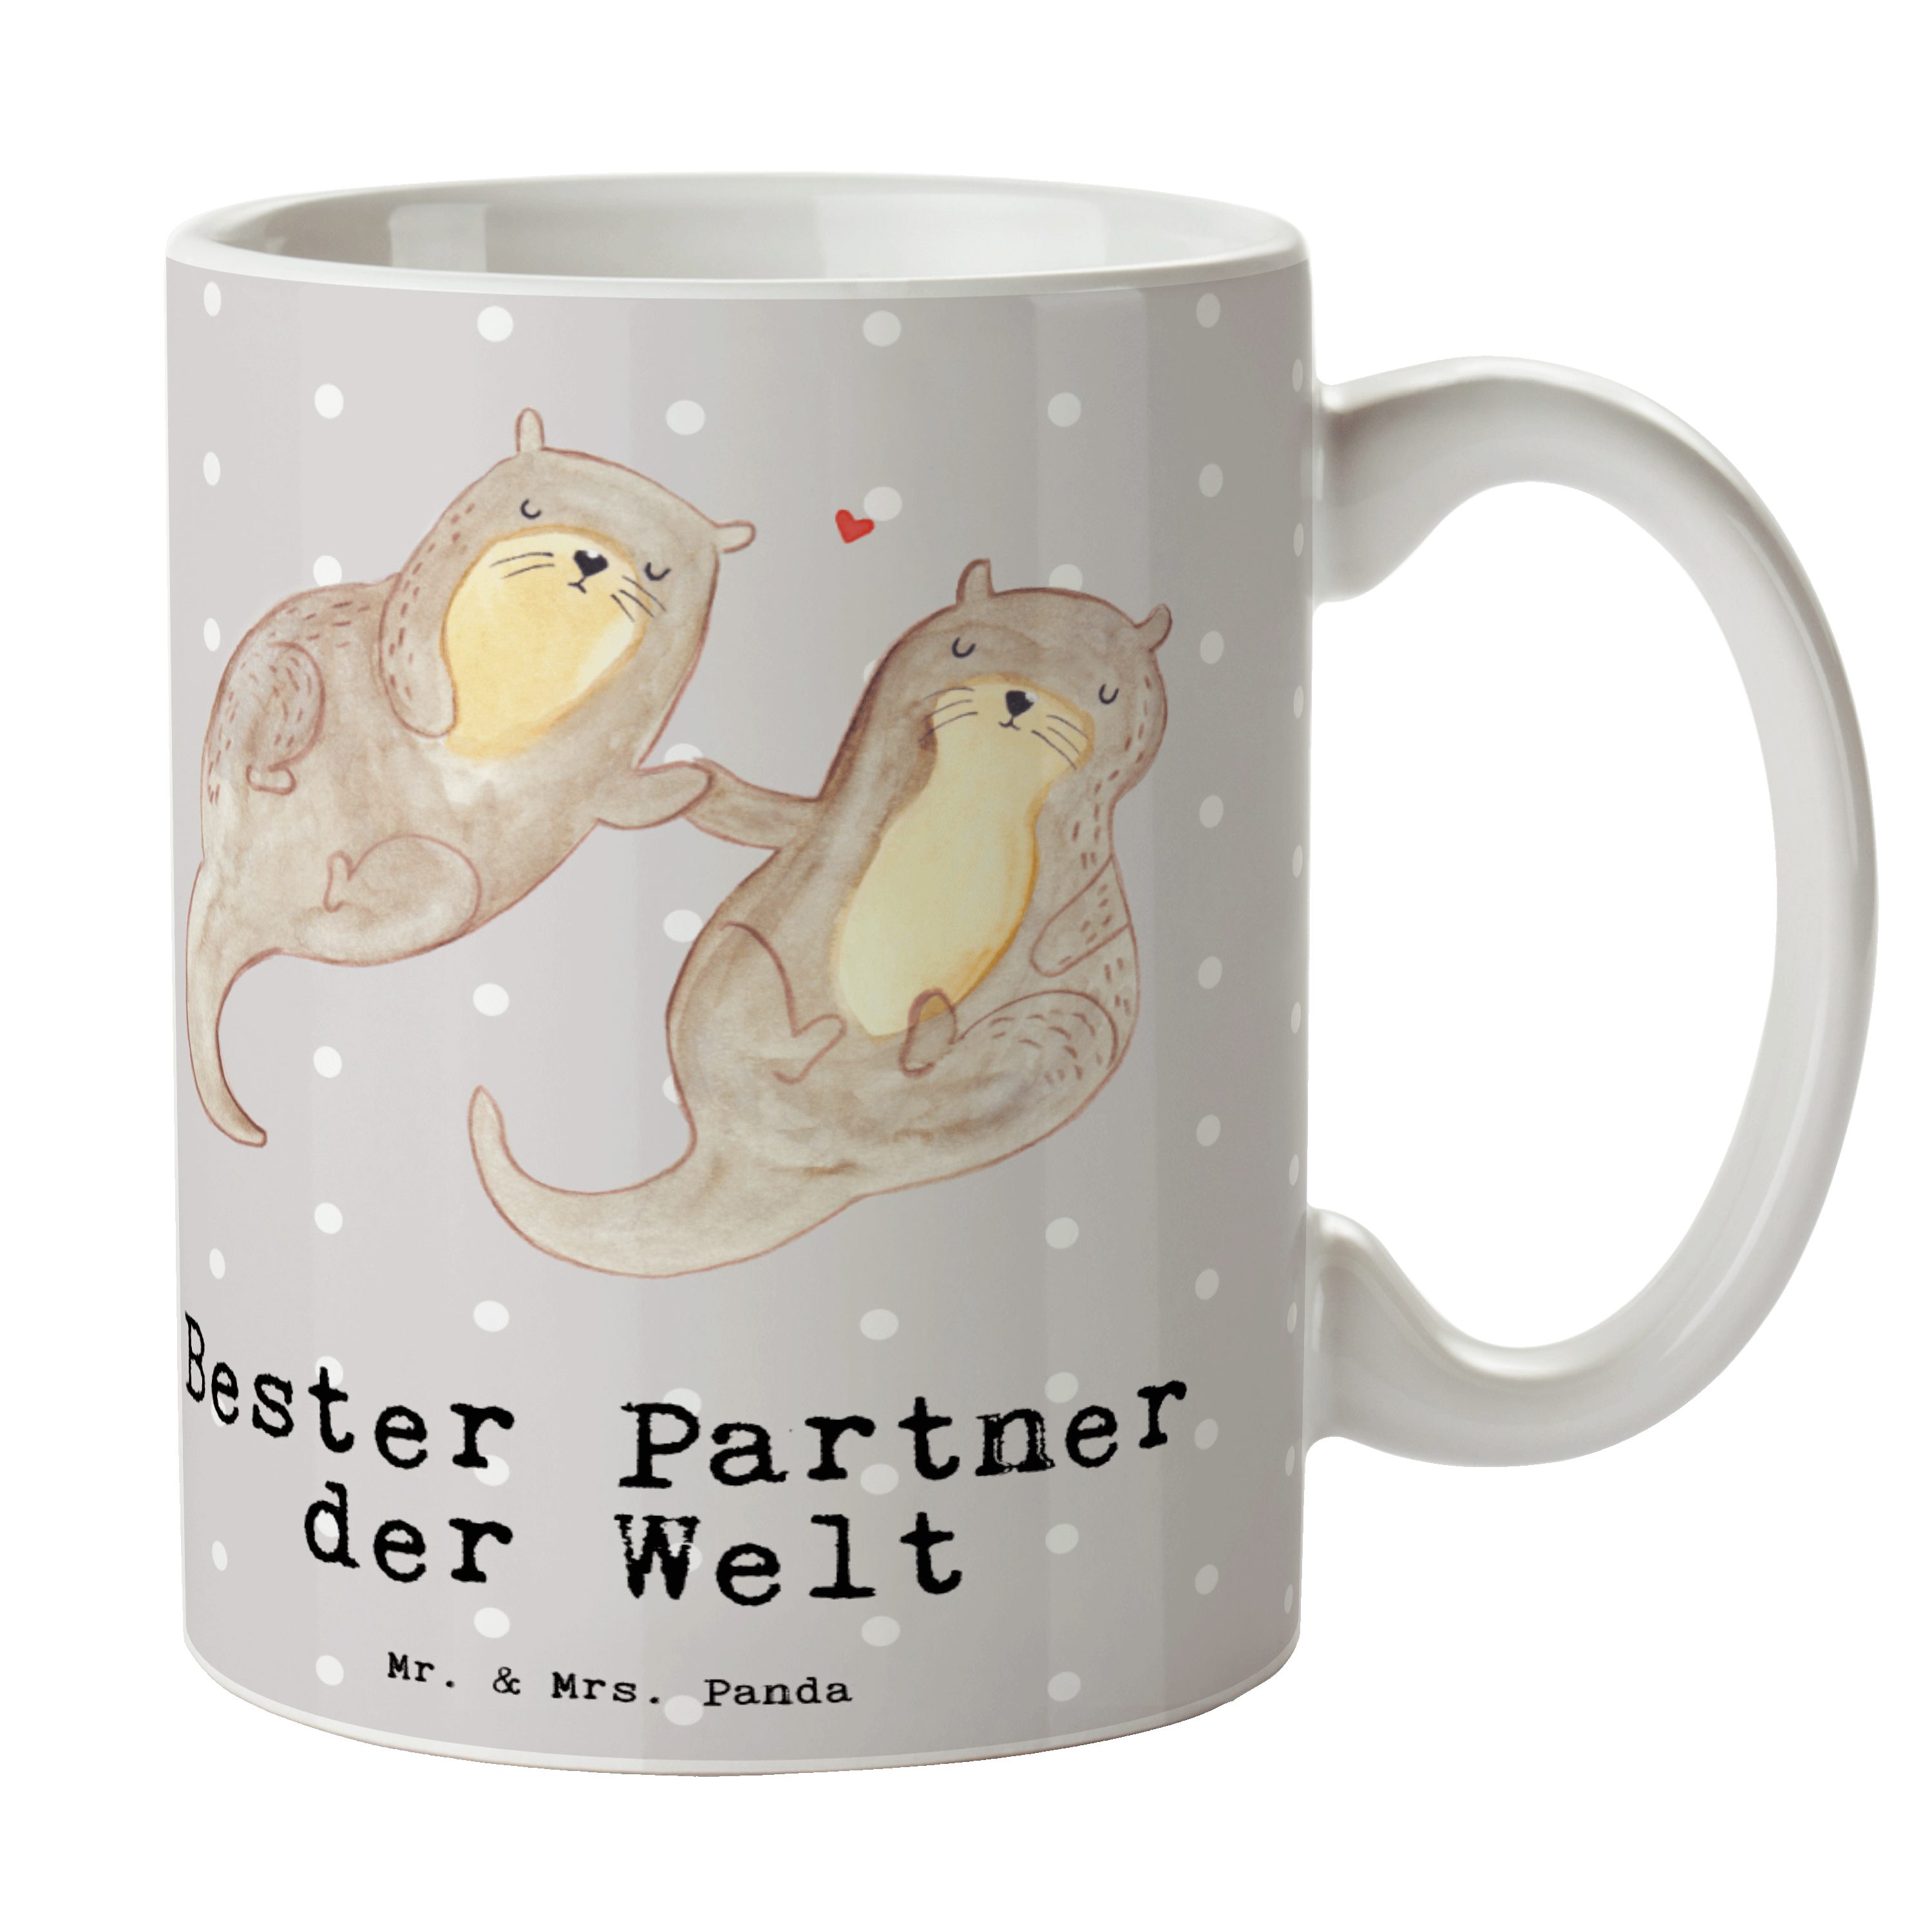 Mr. & Mrs. Panda Tasse Otter Bester Partner der Welt - Grau Pastell - Geschenk, Büro, Gesche, Keramik